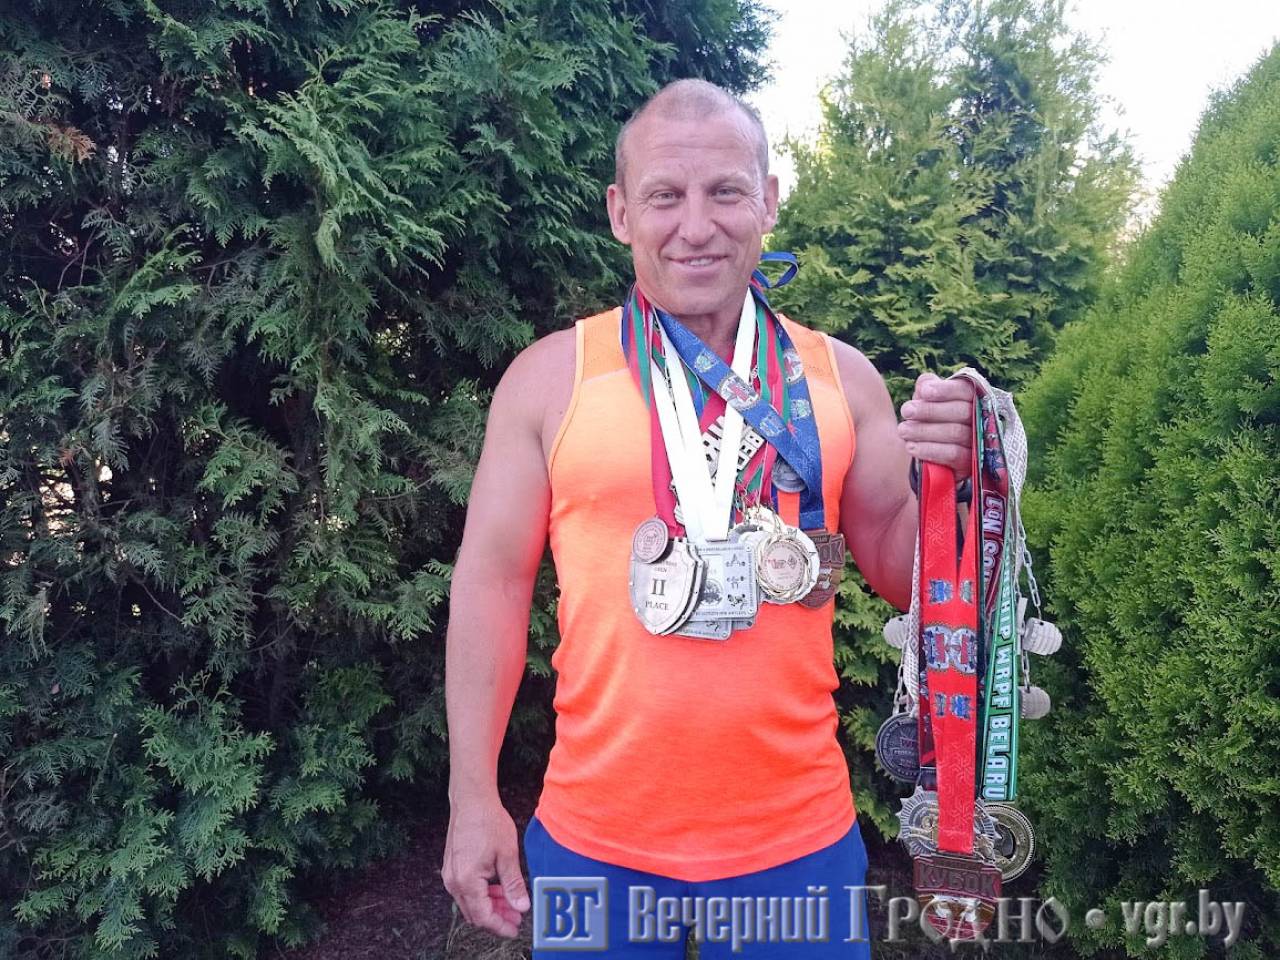 «А я люблю тяжести поднимать» — как рабочий табачной фабрики Гродно стал чемпионом Беларуси по пауэрлифтингу